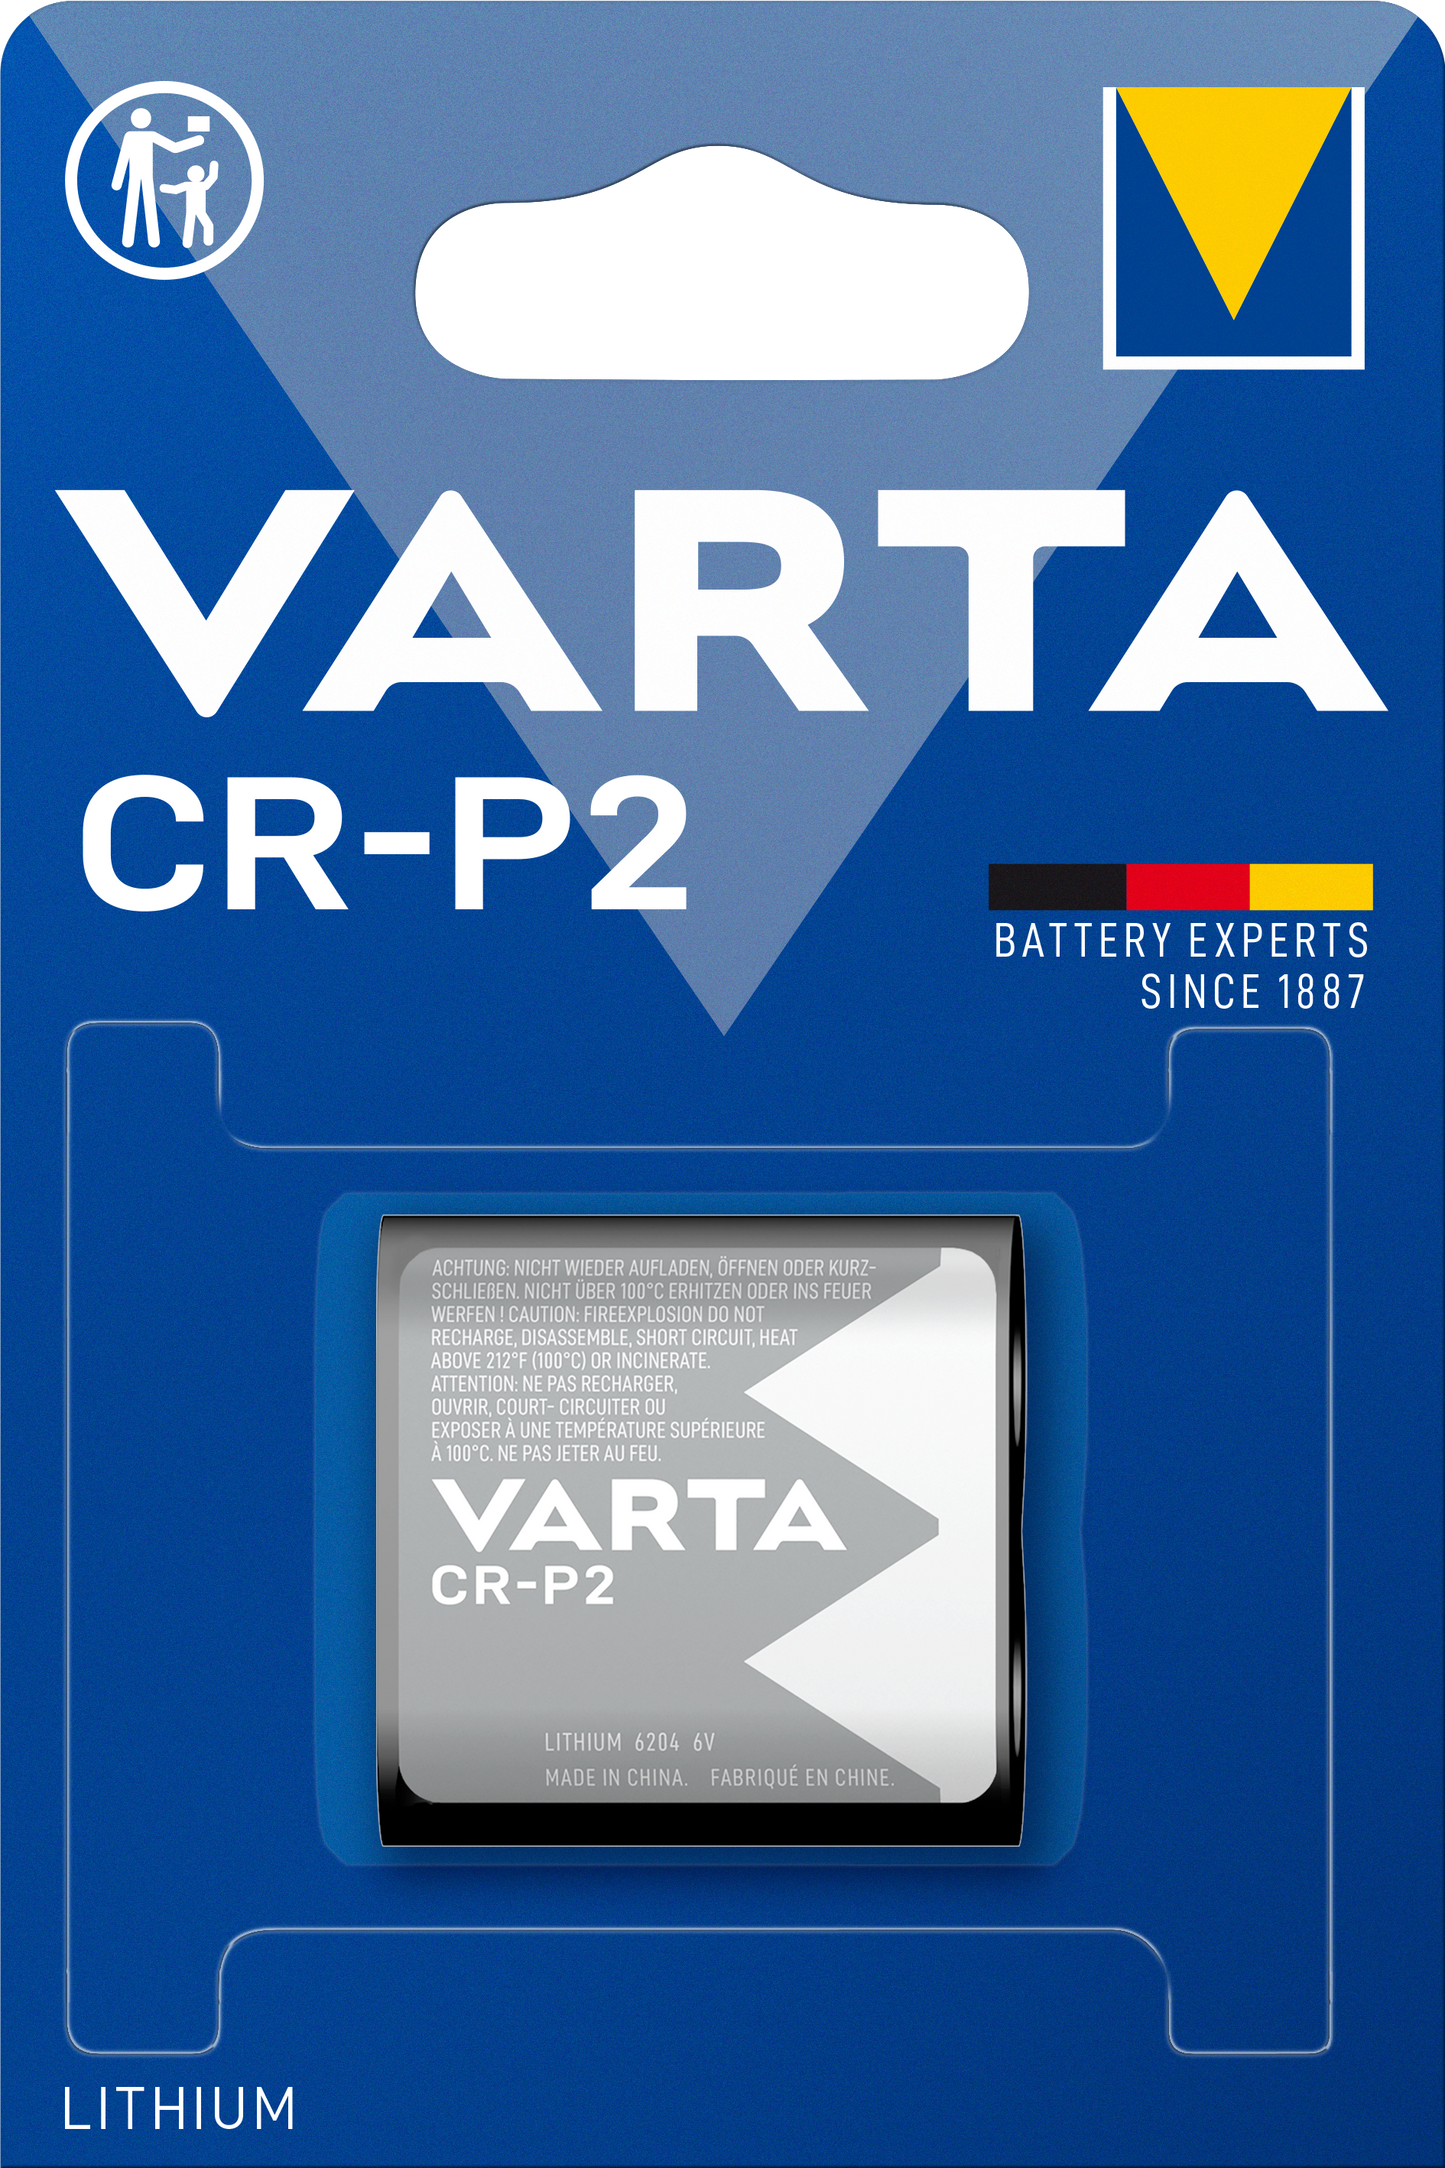 VARTA - Lithium - CRP2